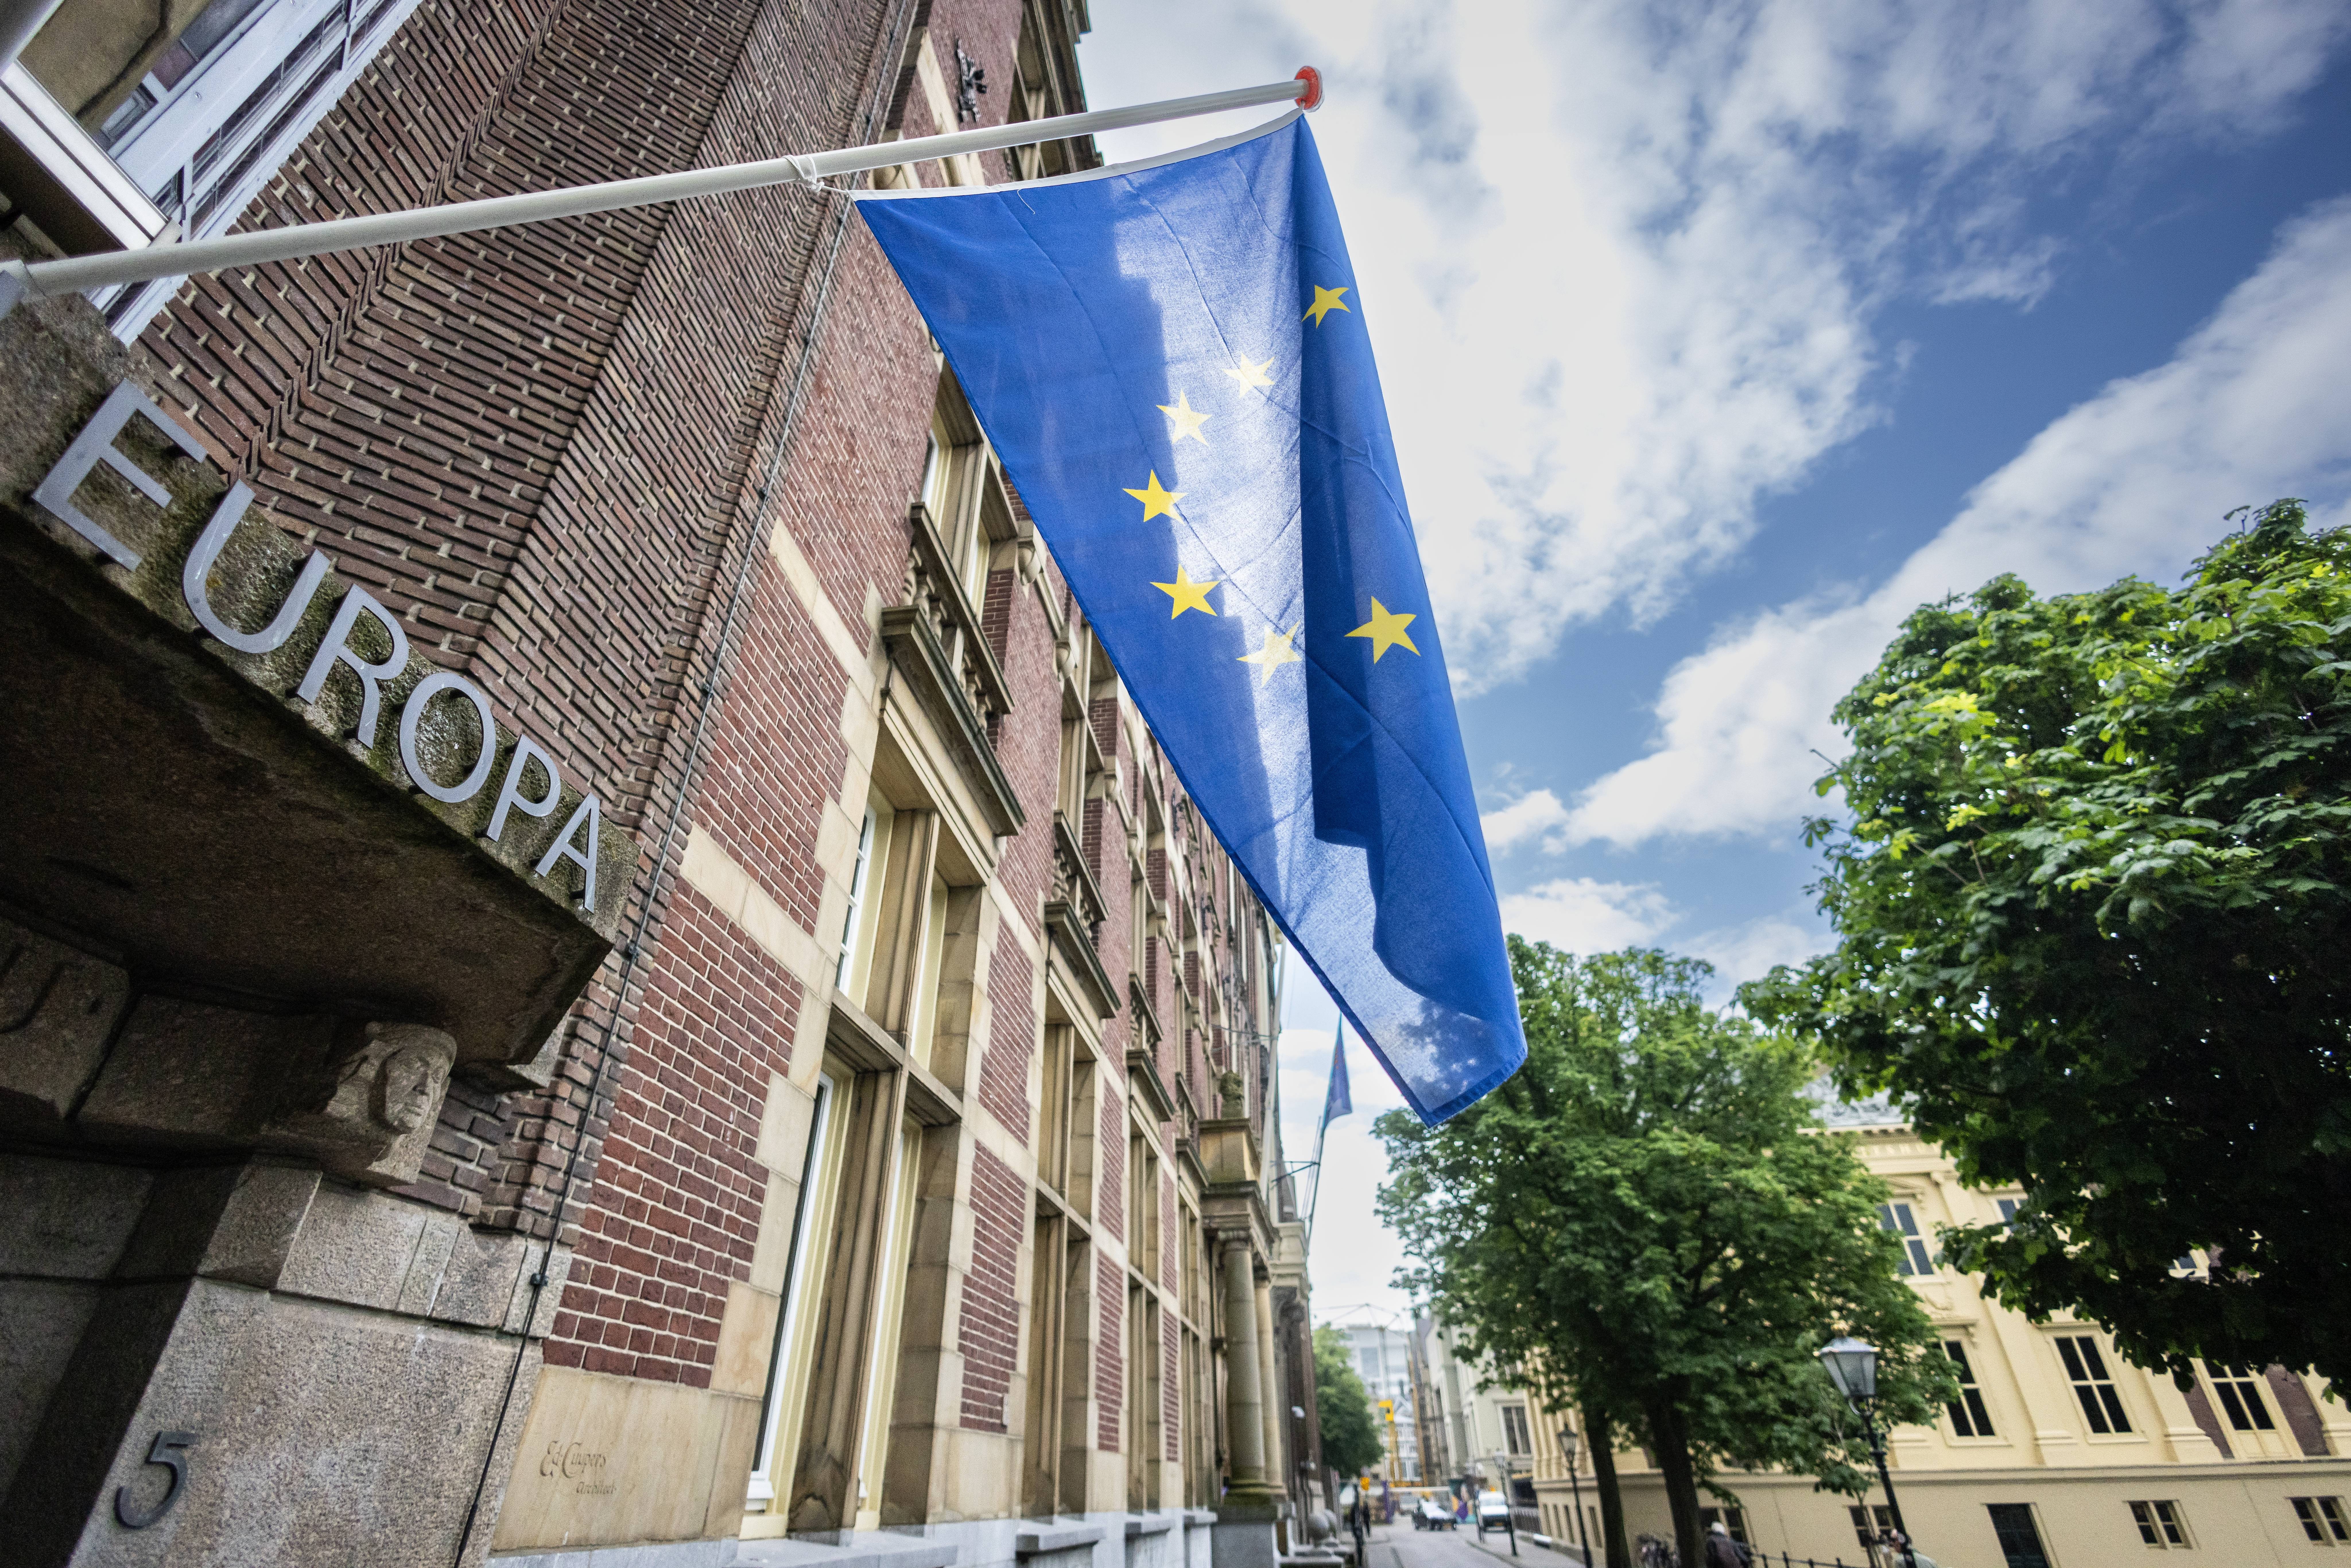 Ein Backsteingebäude auf dem EUROPA steht und vor dessen Eingang die Flagge der Europäischen Union gehisst ist